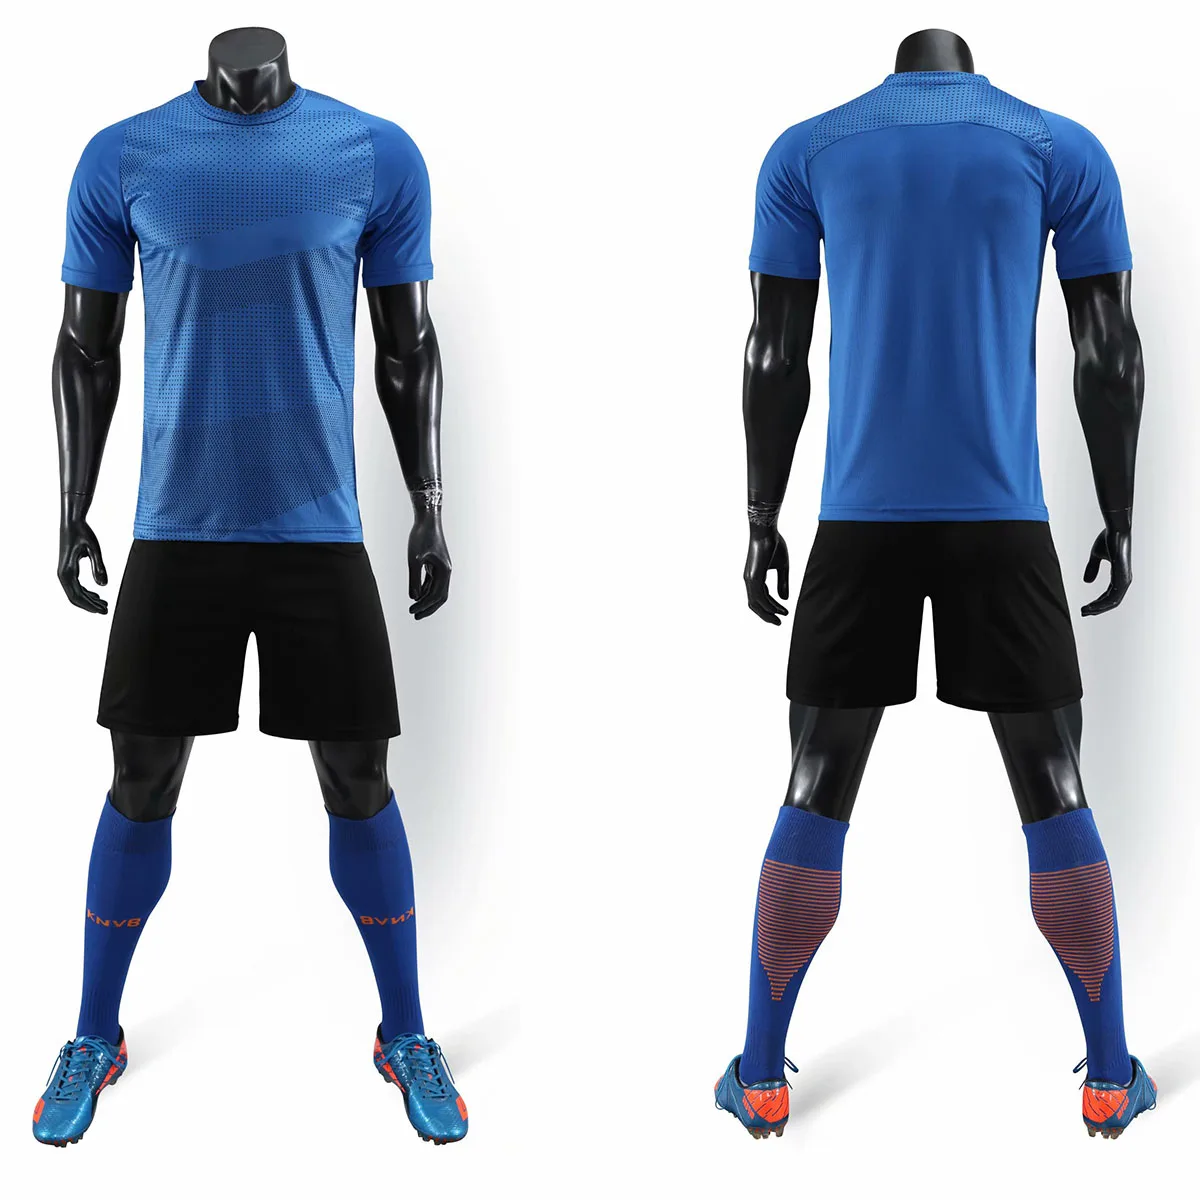 19-20 мужской и женский командный футбольный костюм Джерси, командный футбольный костюм Джерси можно настроить логотип, название и номер